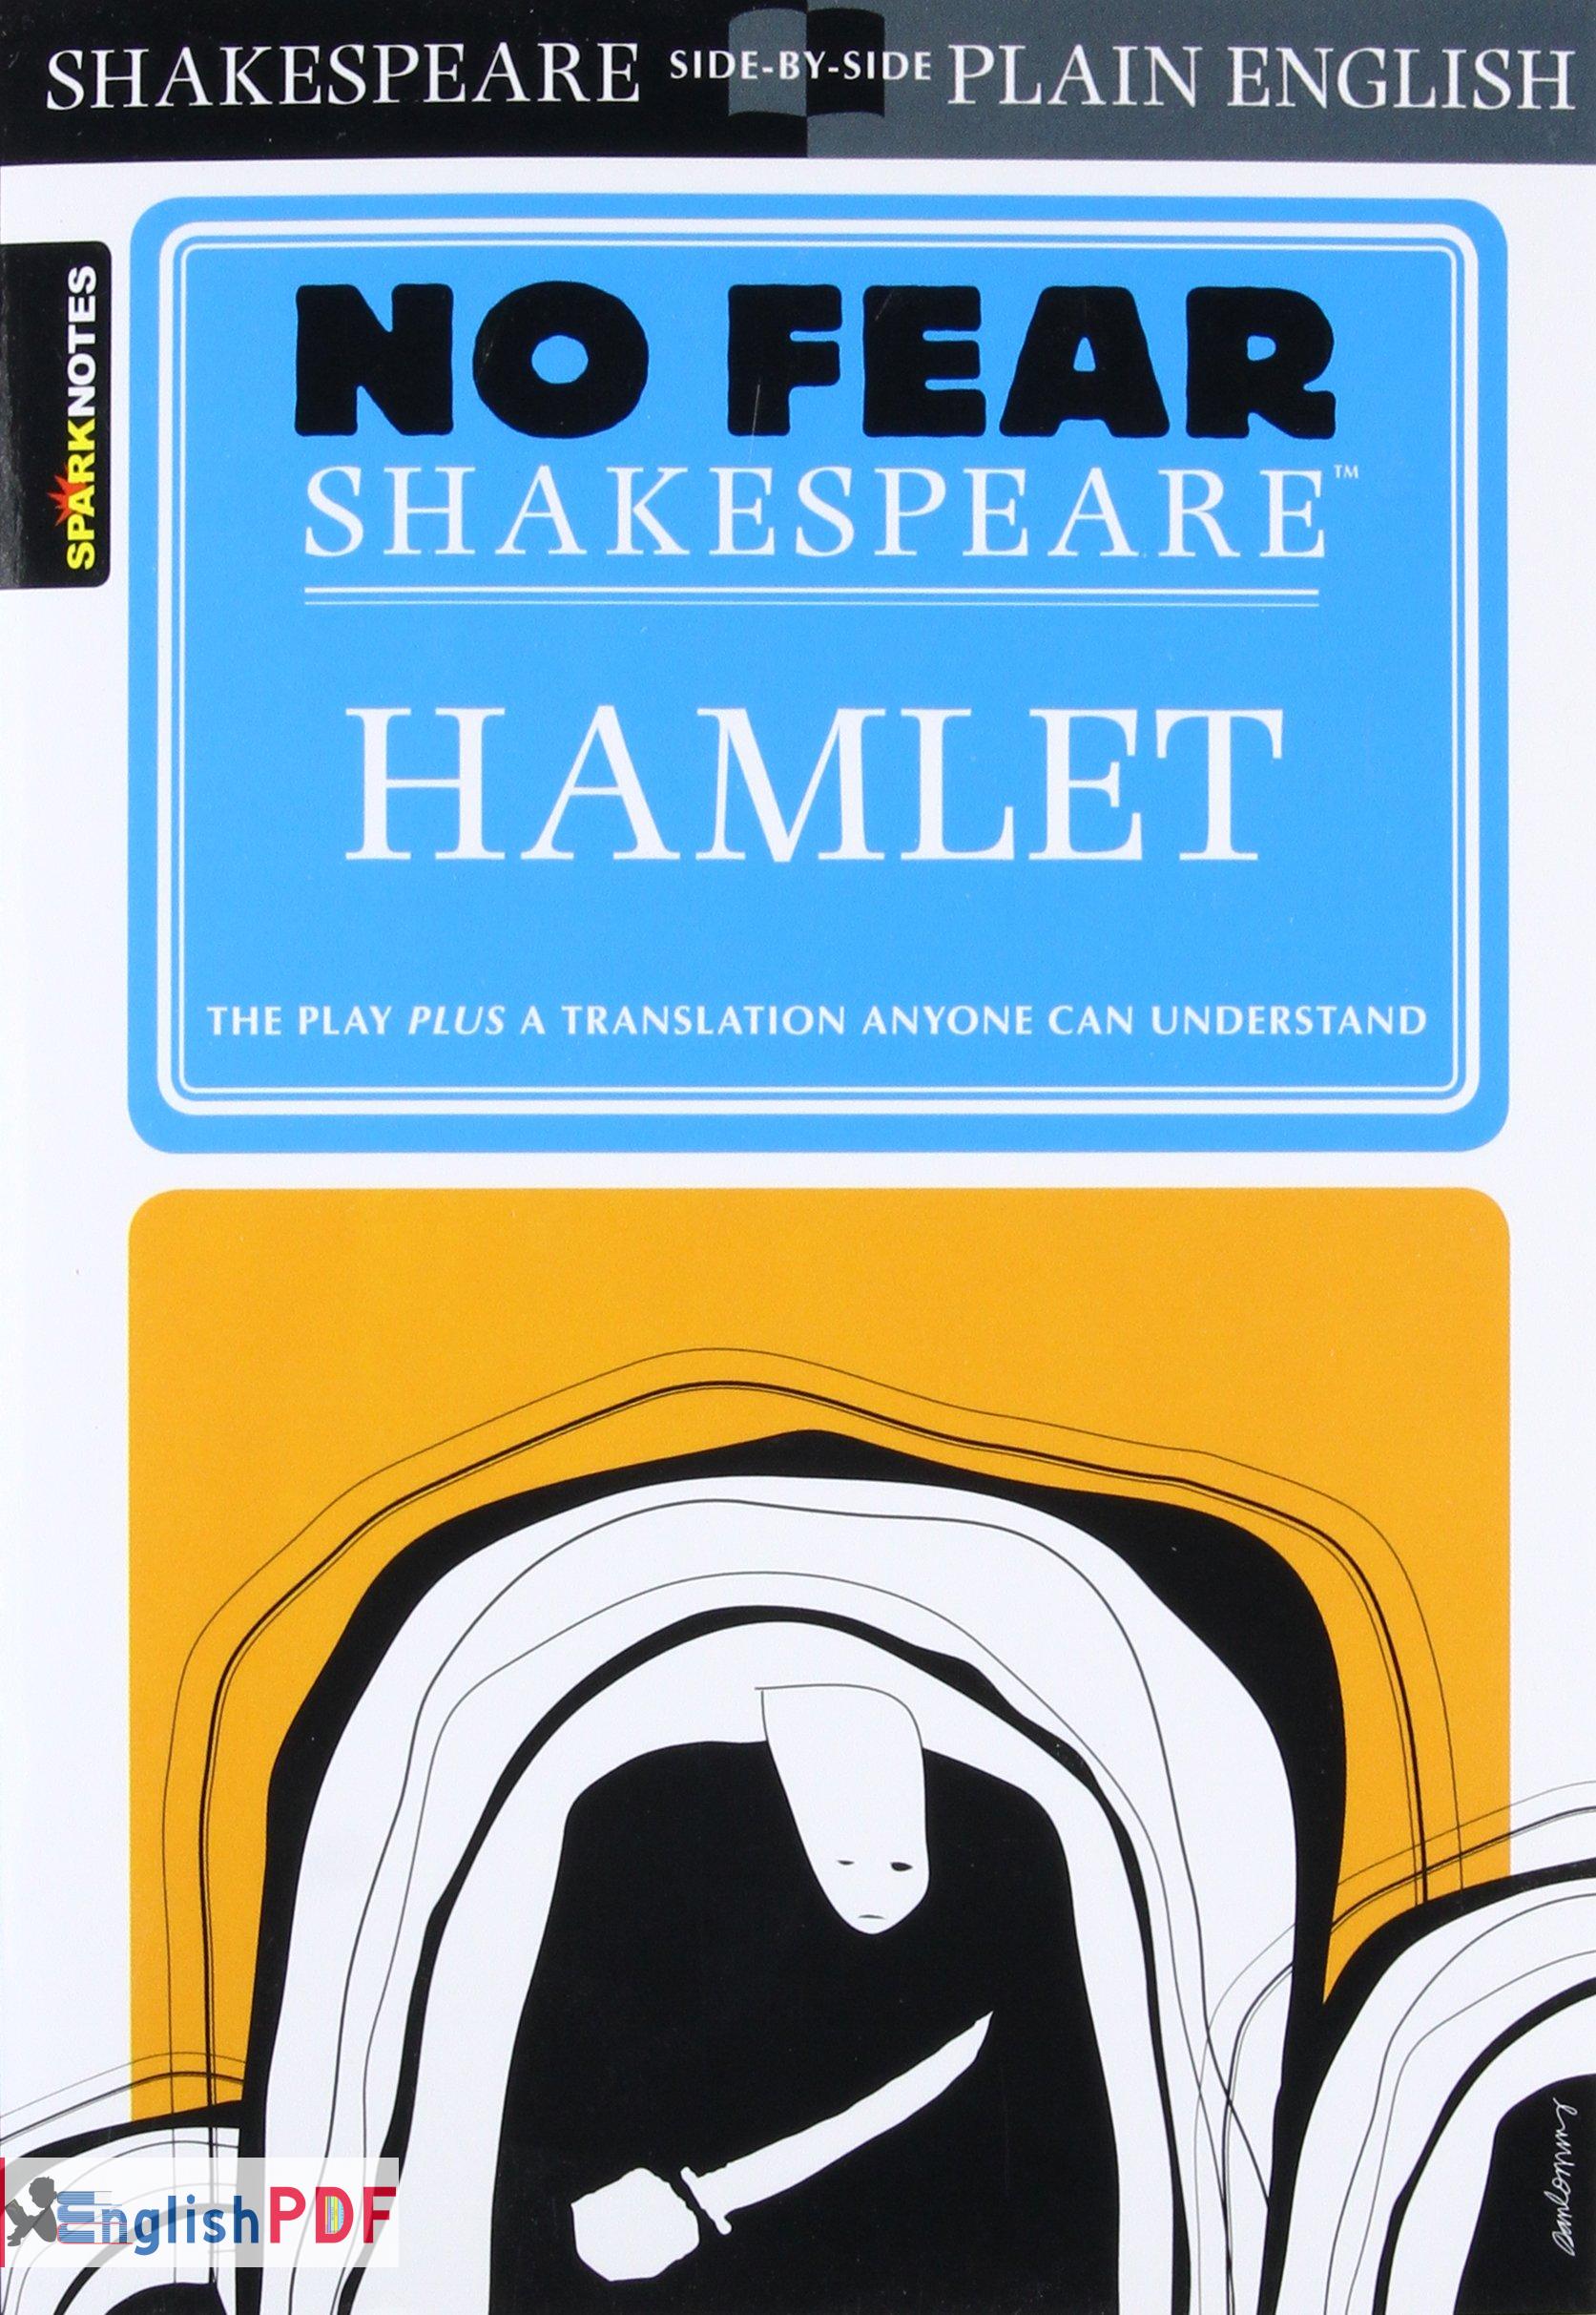 No fear Shakespeare hamlet PDF By EnglishPDF